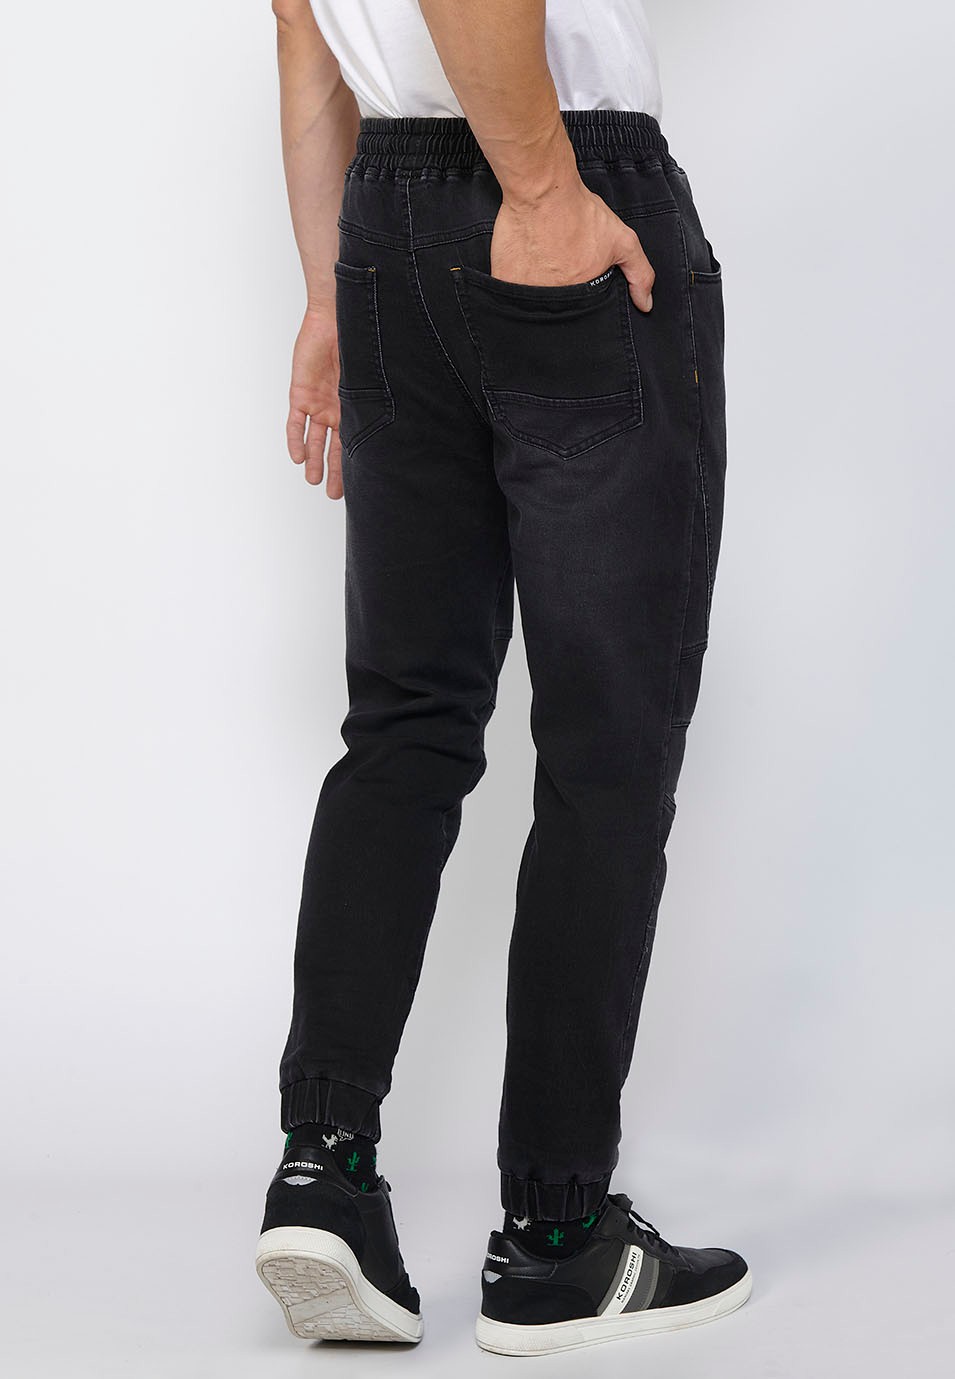 Pantalon de jogging long slim ajusté aux chevilles avec taille élastique réglable et cordon de serrage en Noir pour Homme 7